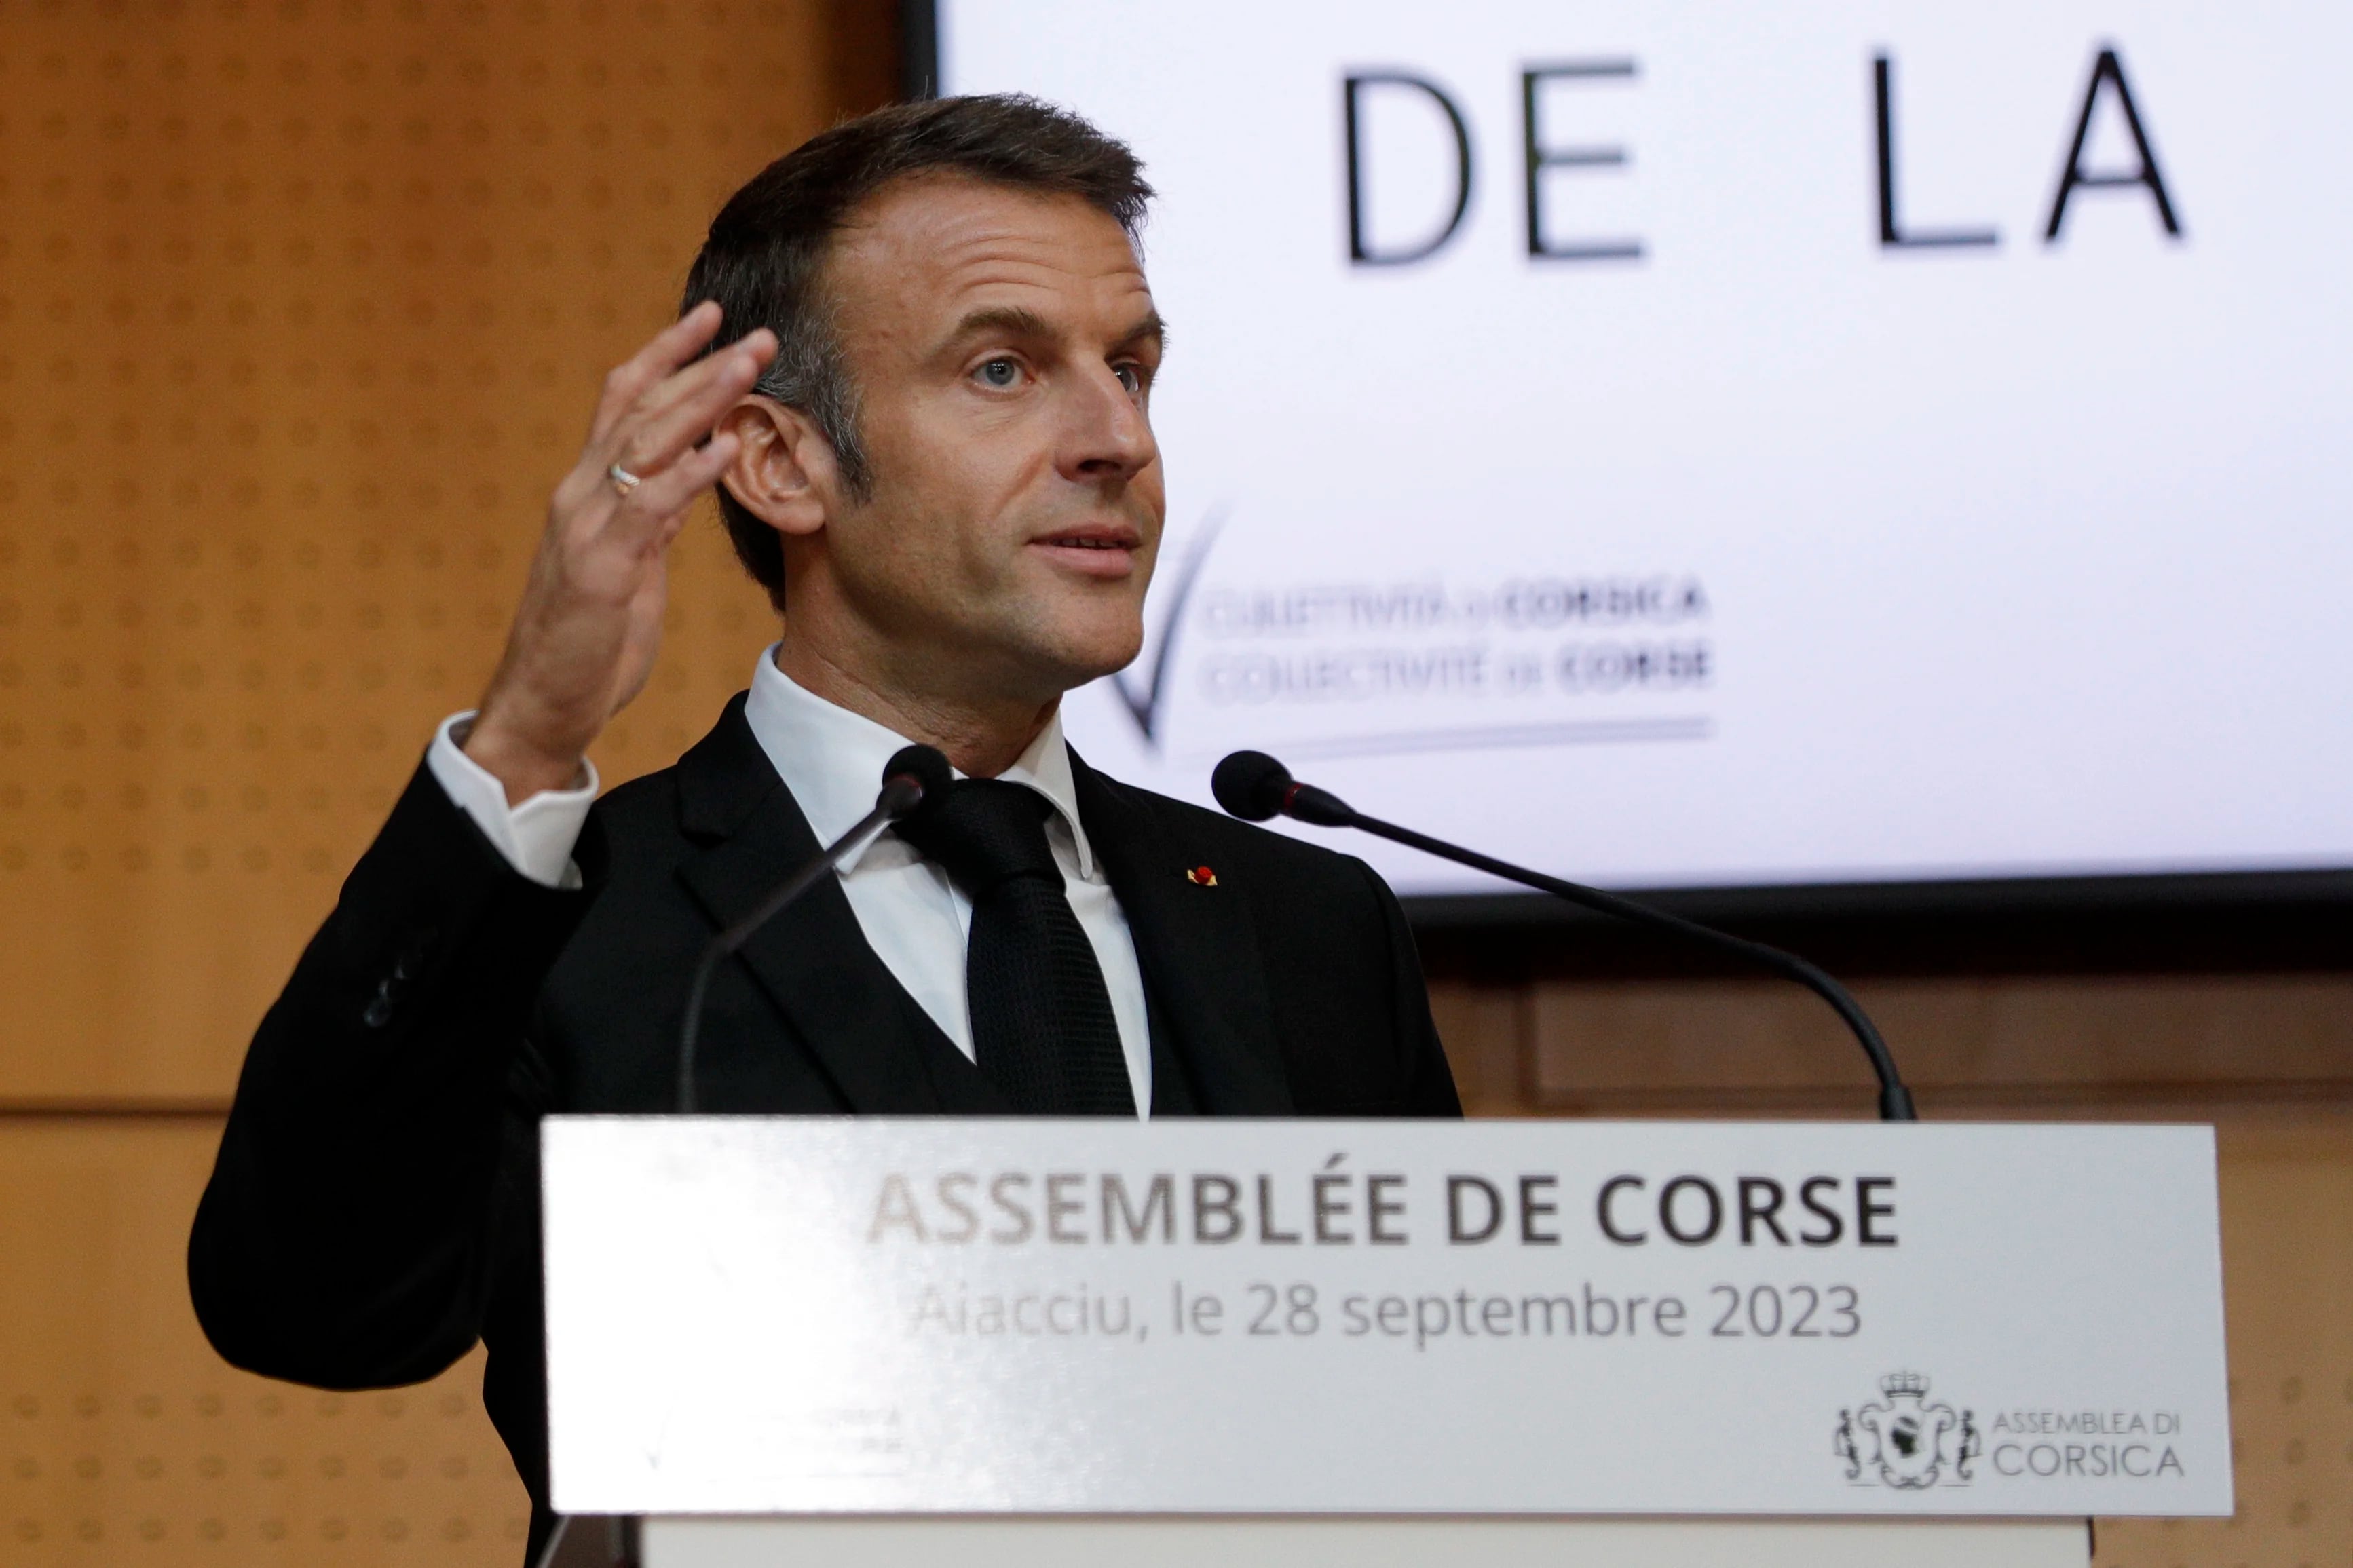 Macron propuso dar autonomía limitada a la isla de Córcega: “Pasaremos una página que estuvo marcada por horas sombrías” (EFE)